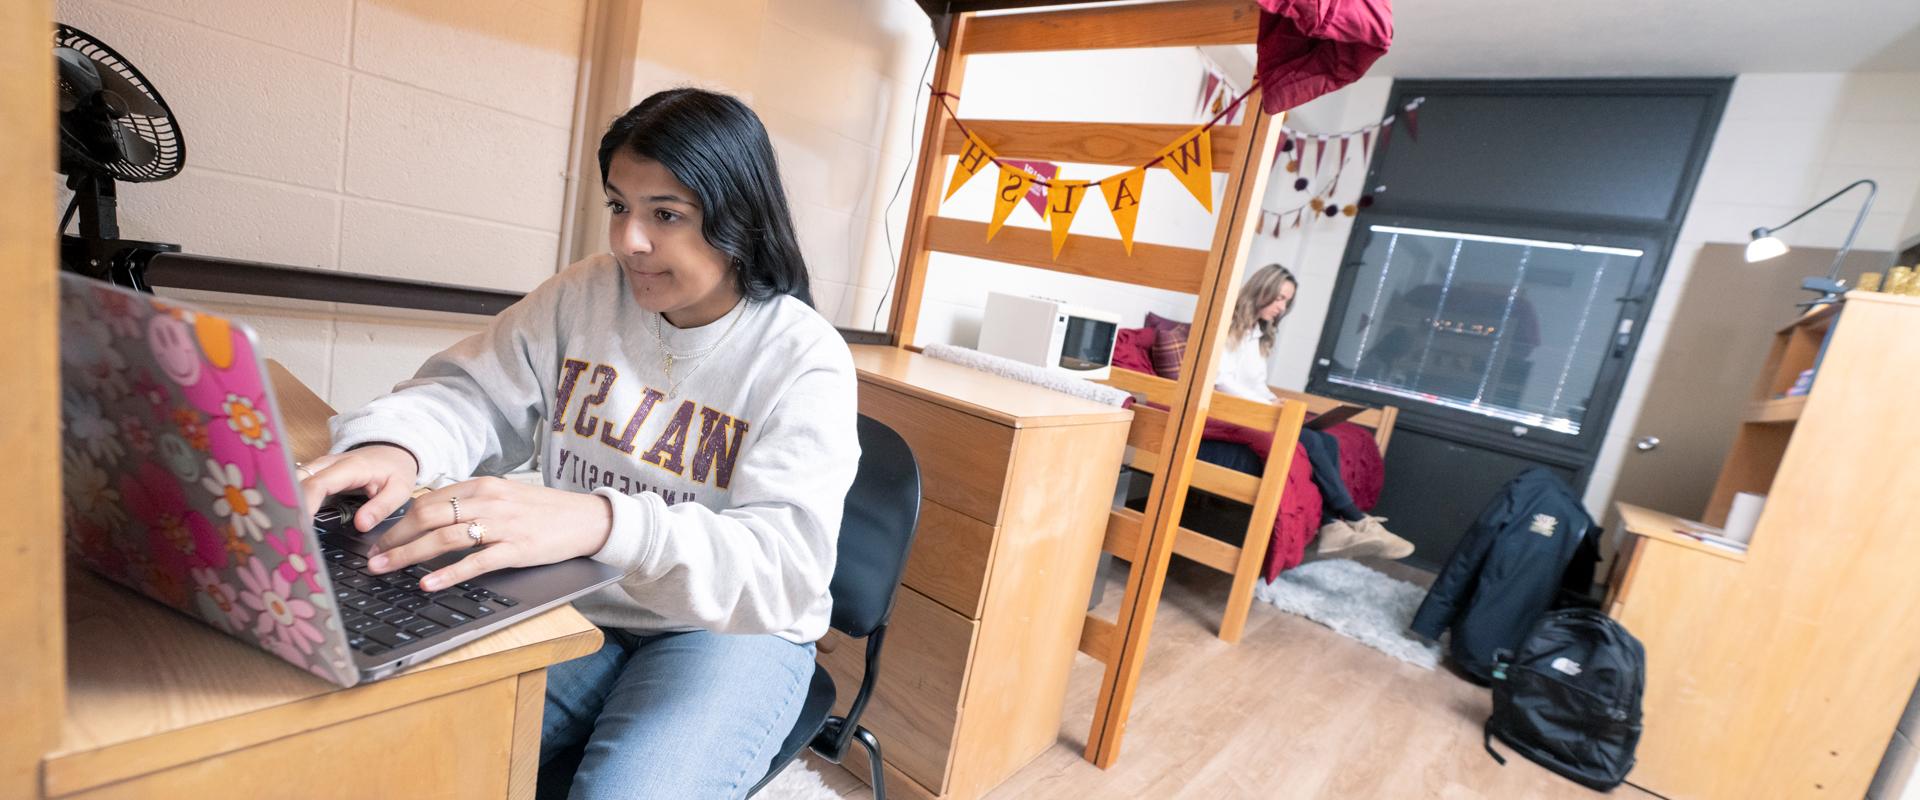 两名女学生在宿舍用笔记本电脑工作的照片